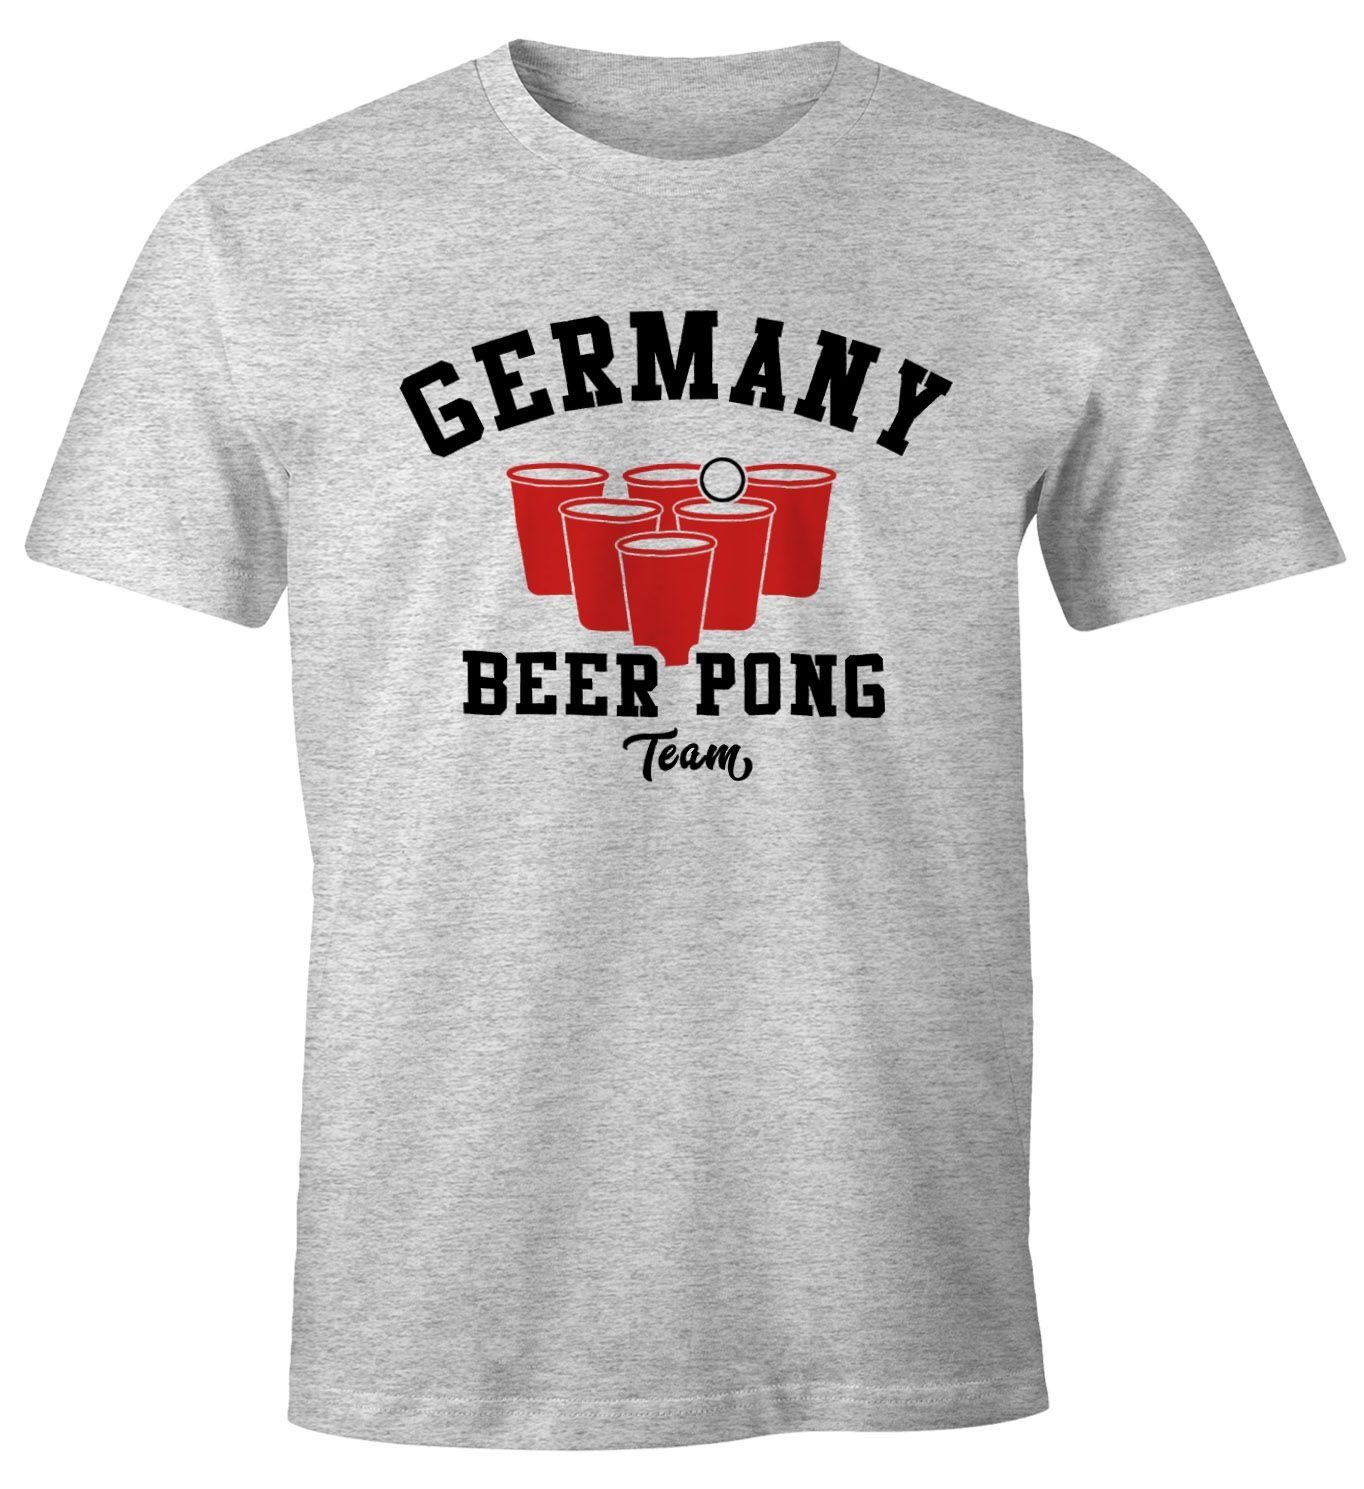 MoonWorks Print-Shirt Herren T-Shirt Germany Beer Pong Team Bier Fun-Shirt Moonworks® mit Print grau